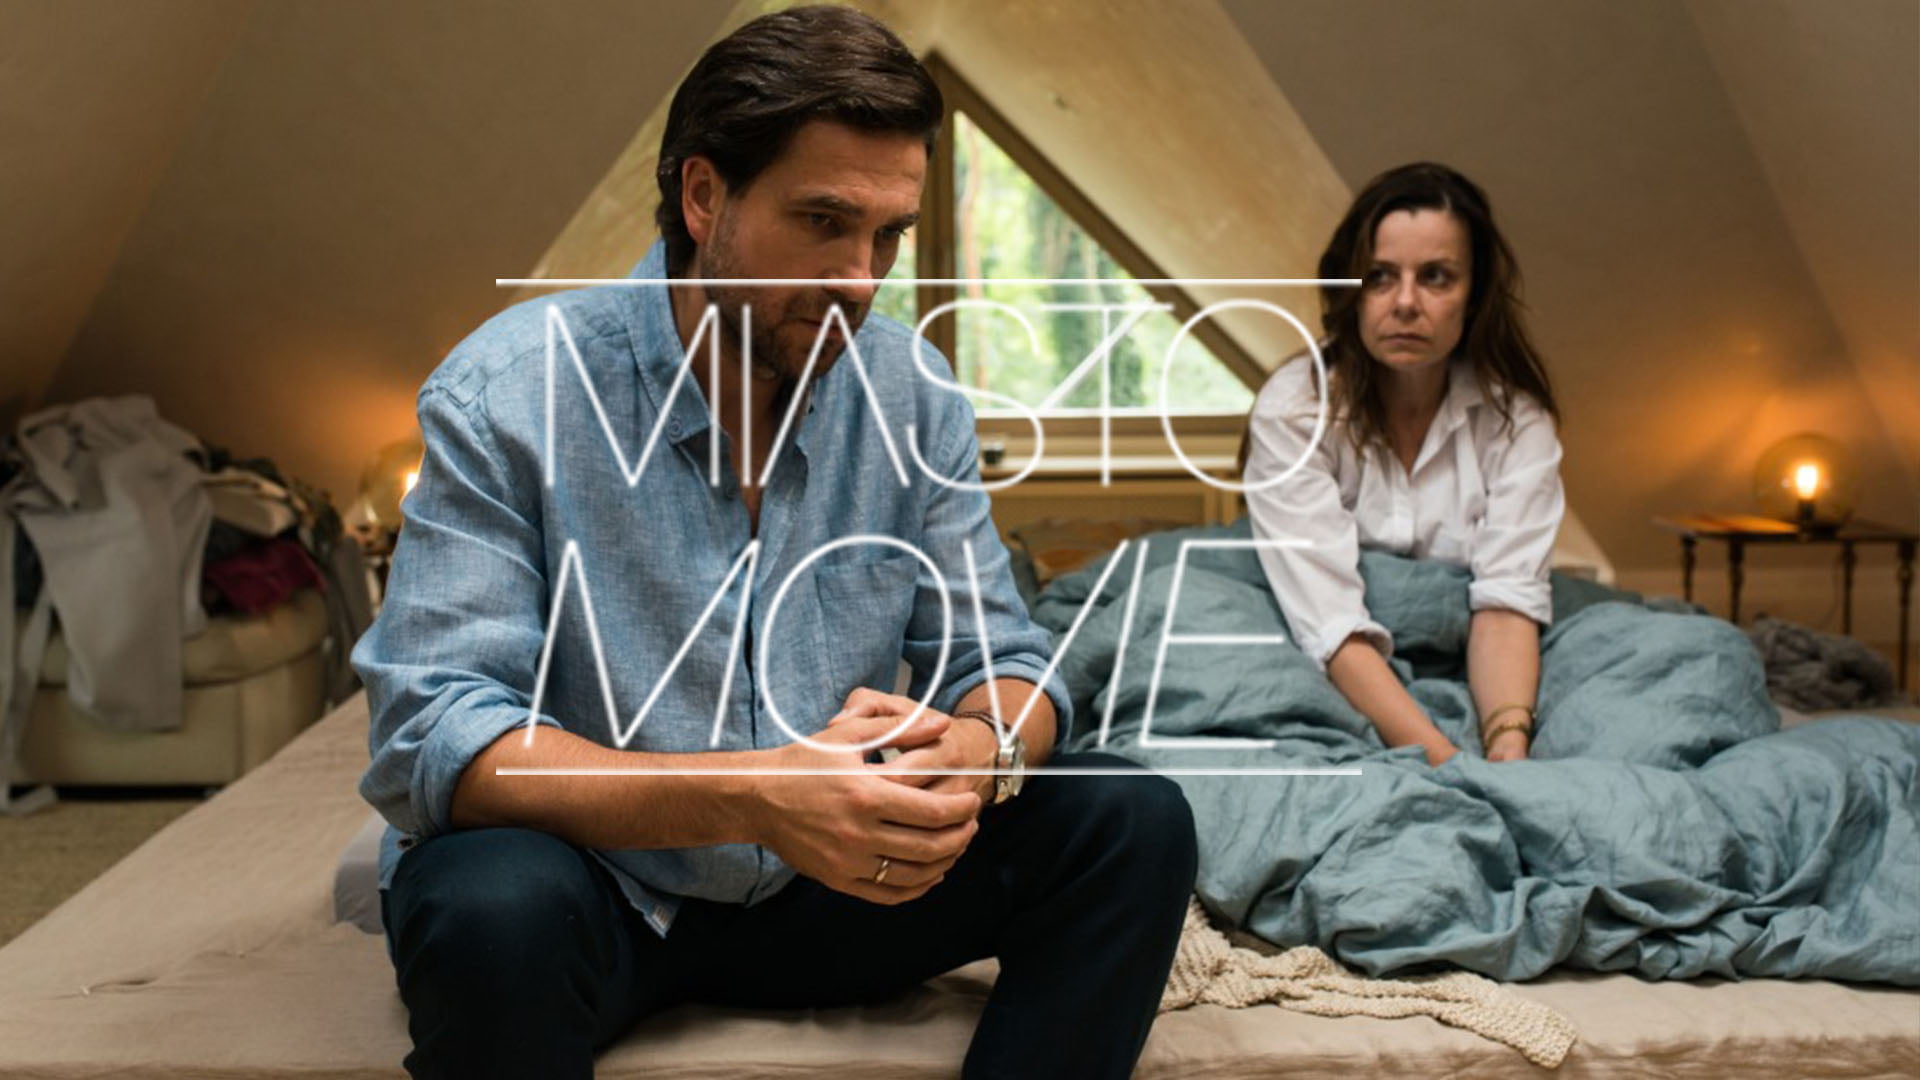 Kobieta i mężczyzna siedzą na łóżku. Na środku napis Miasto Movie.